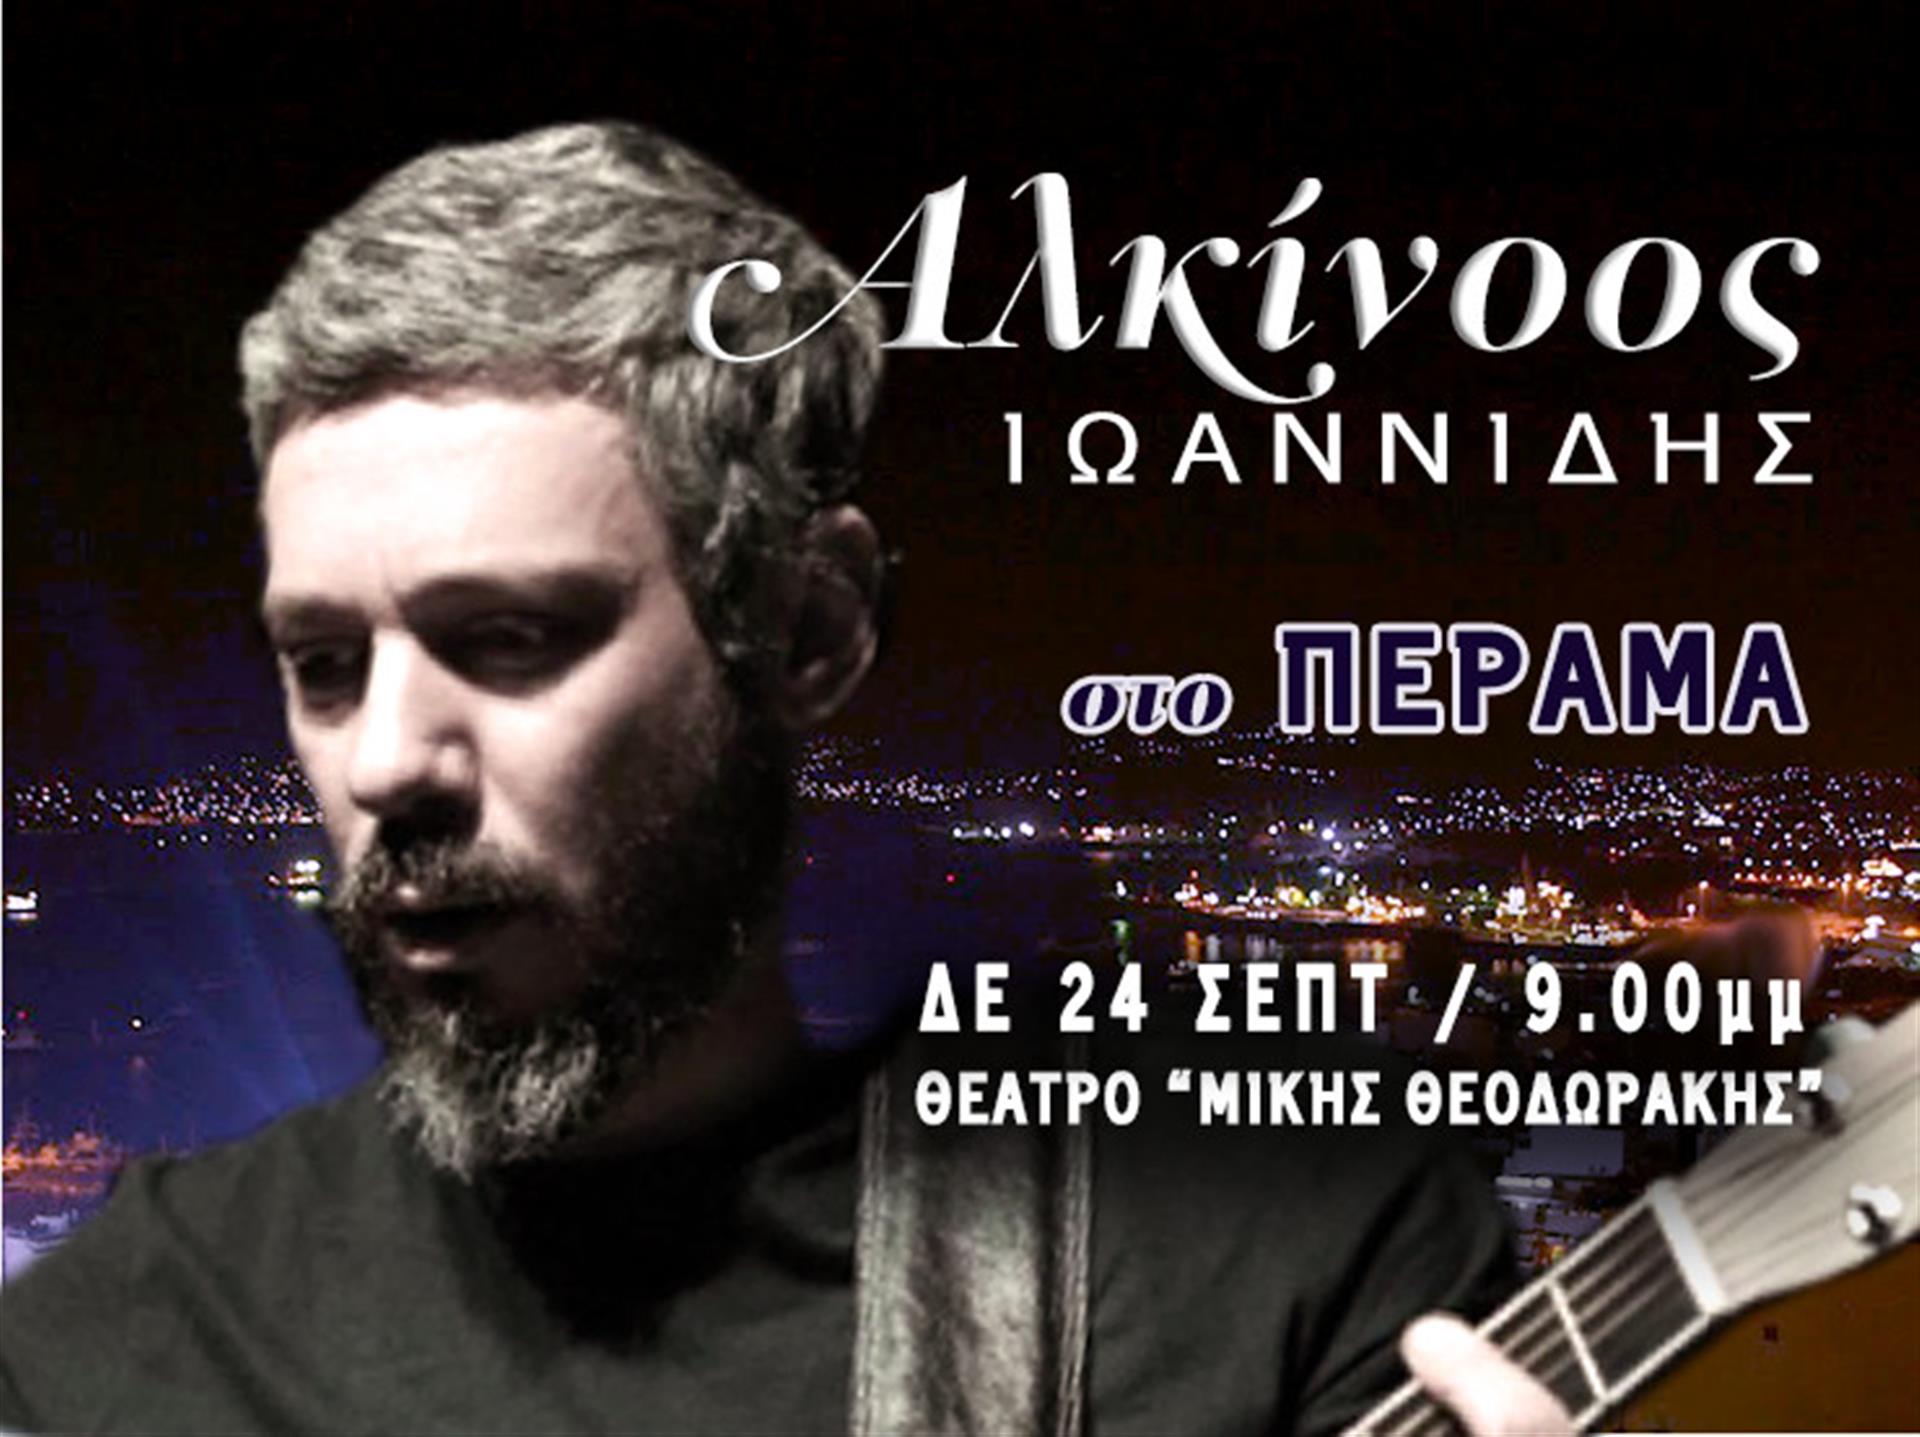 Συναυλία Αλκίνοου Ιωαννίδη στο Πέραμα